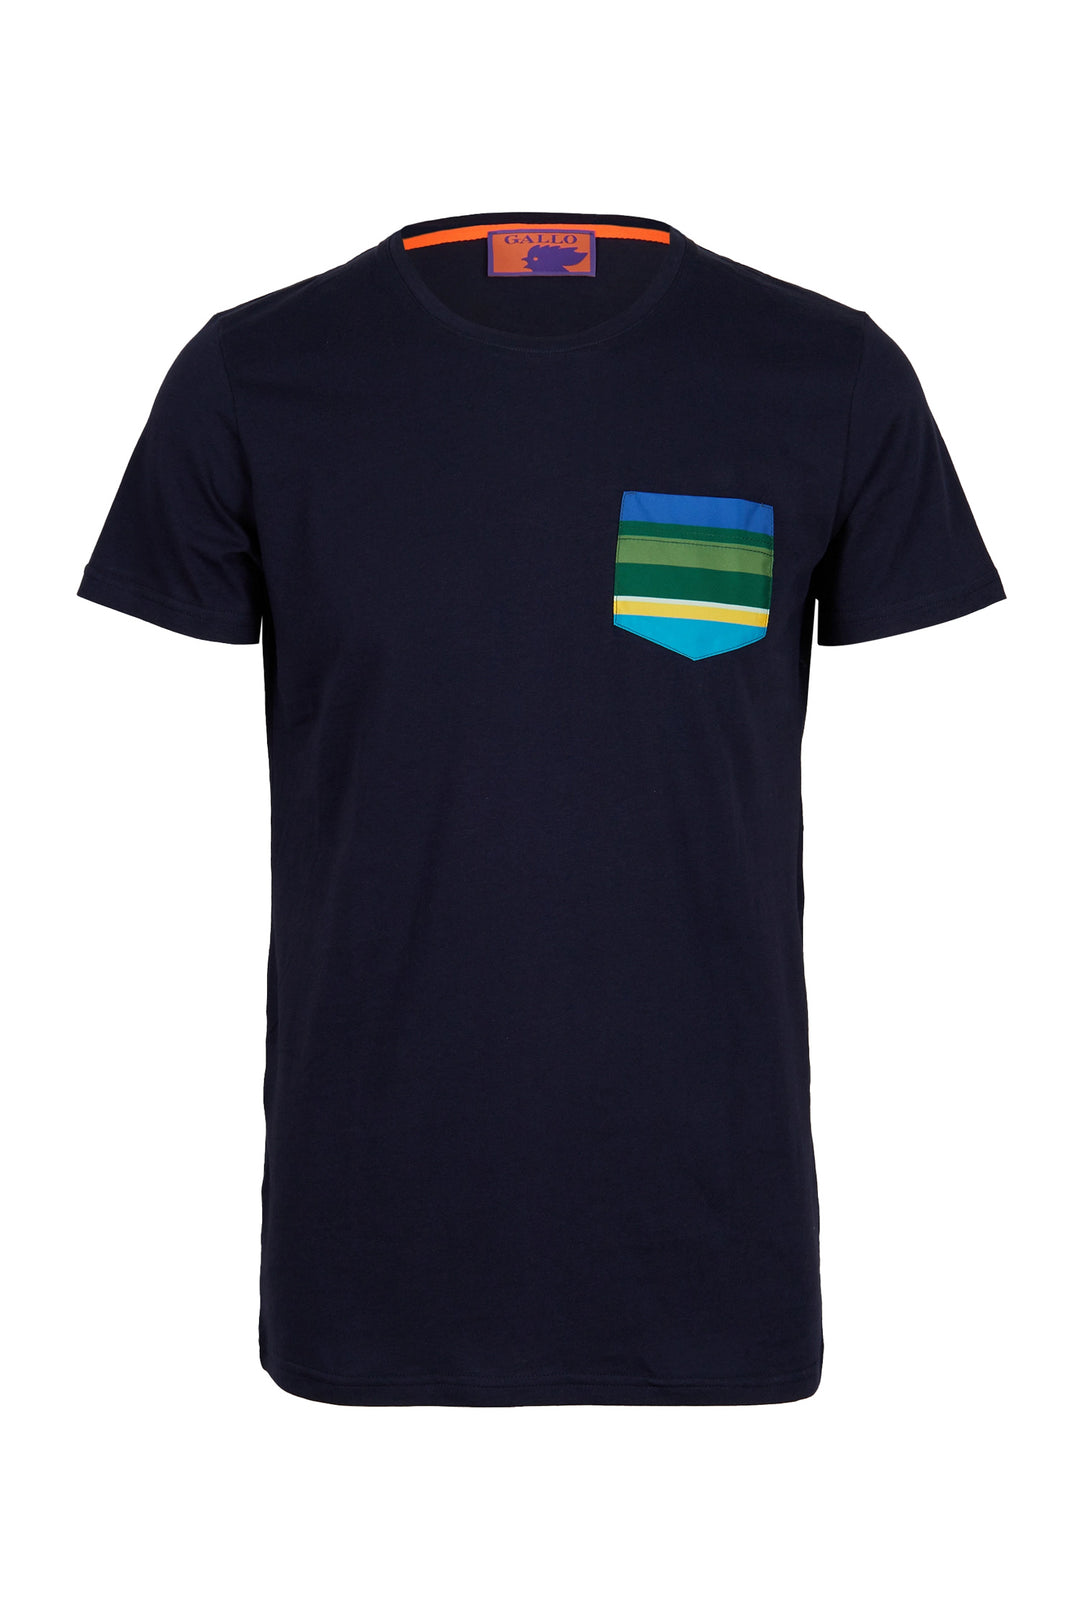 GALLO T-shirt cotone blu tinta unita e taschino multicolor - Mancinelli 1954